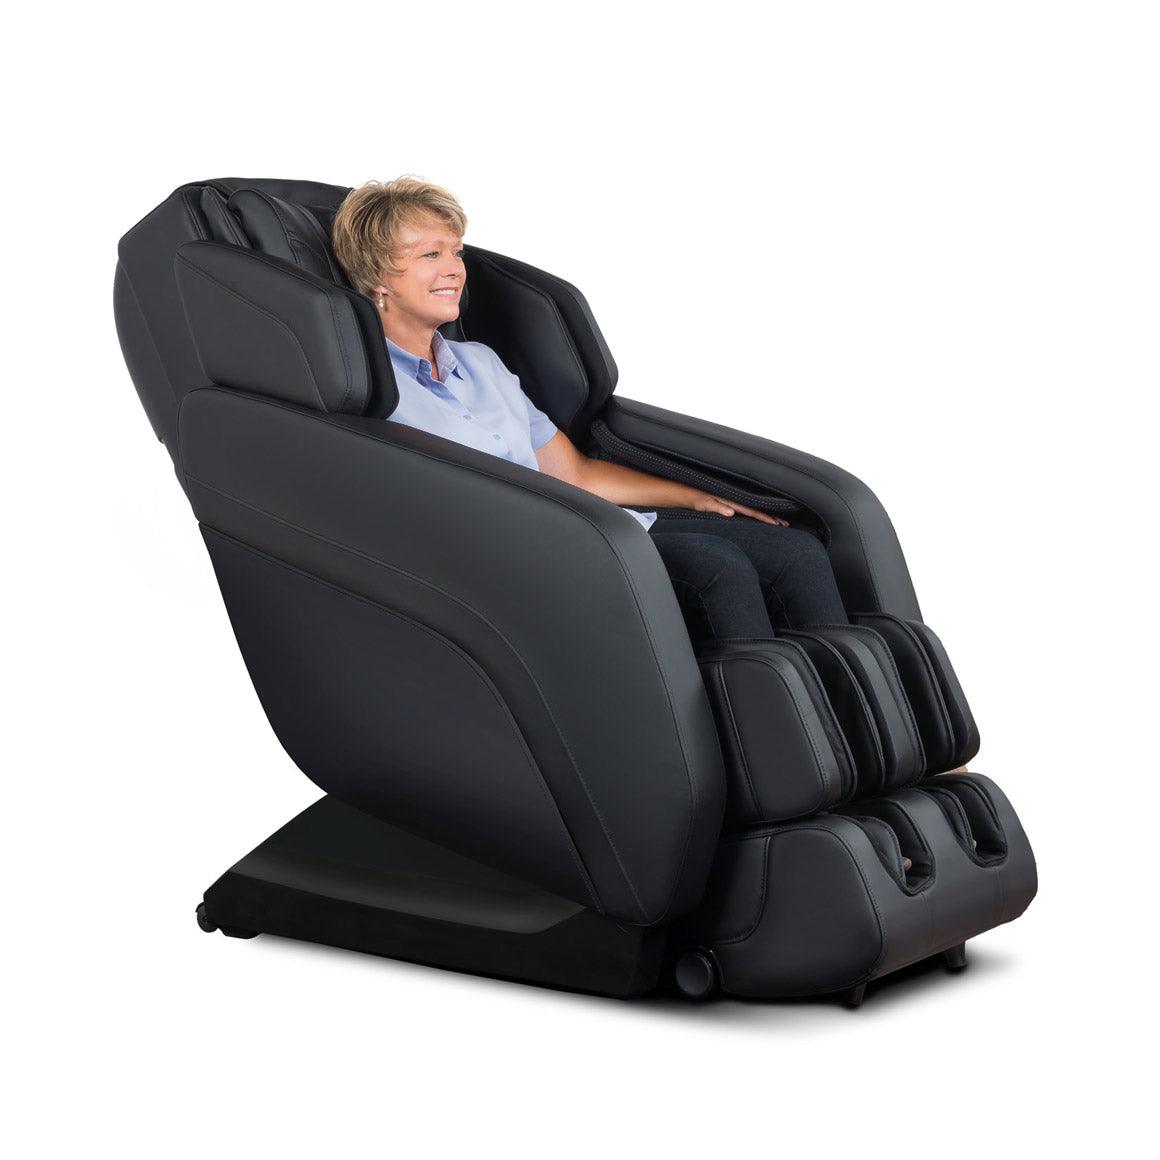 MK-V PLUS Full Body Massage Chair (Black)